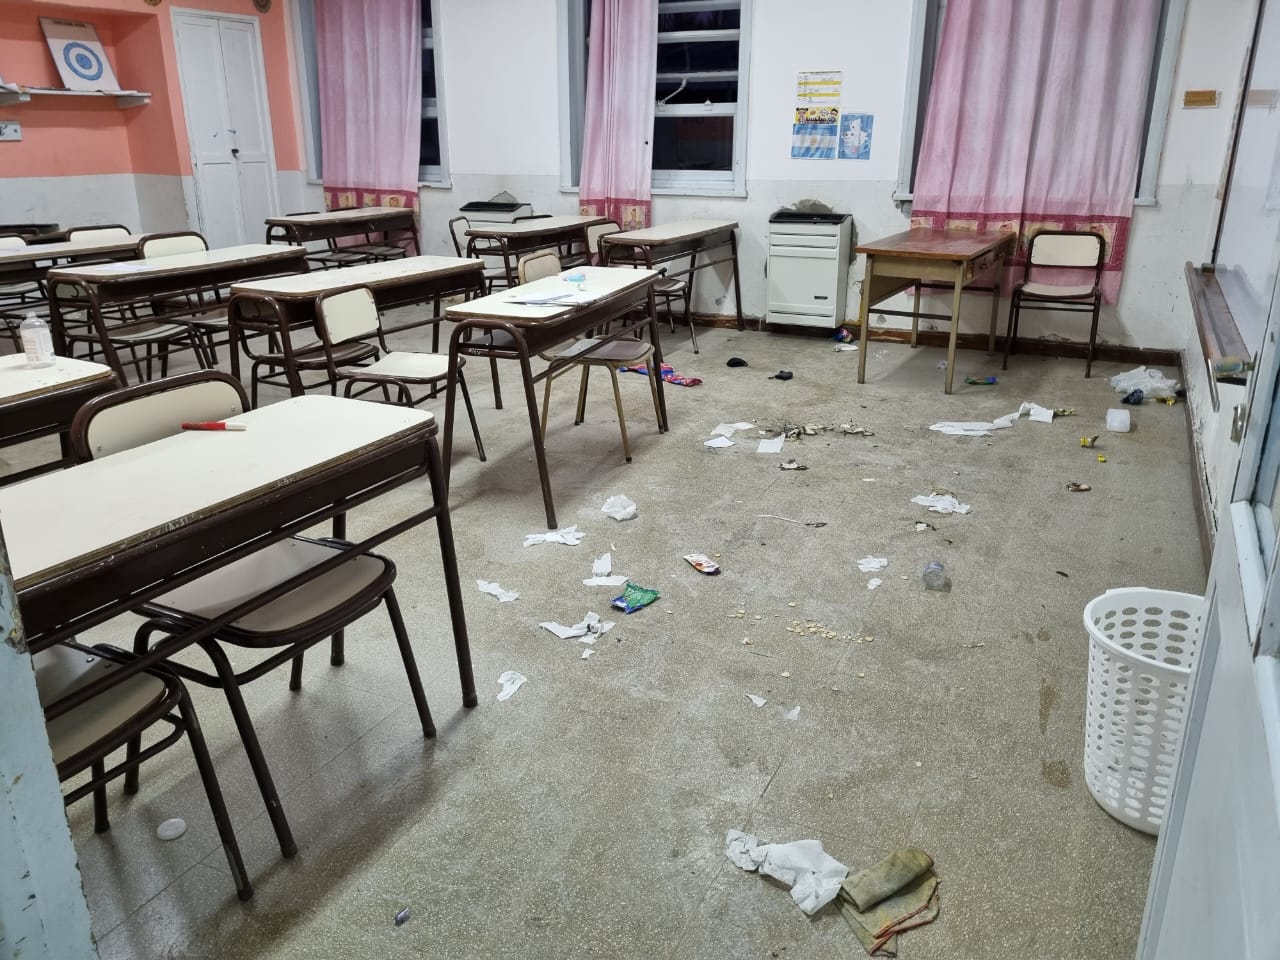 En la escuela se registraron destrozos y pintadas de mensajes amenazantes, según describieron desde ATEN. (Foto prensa ATEN).-